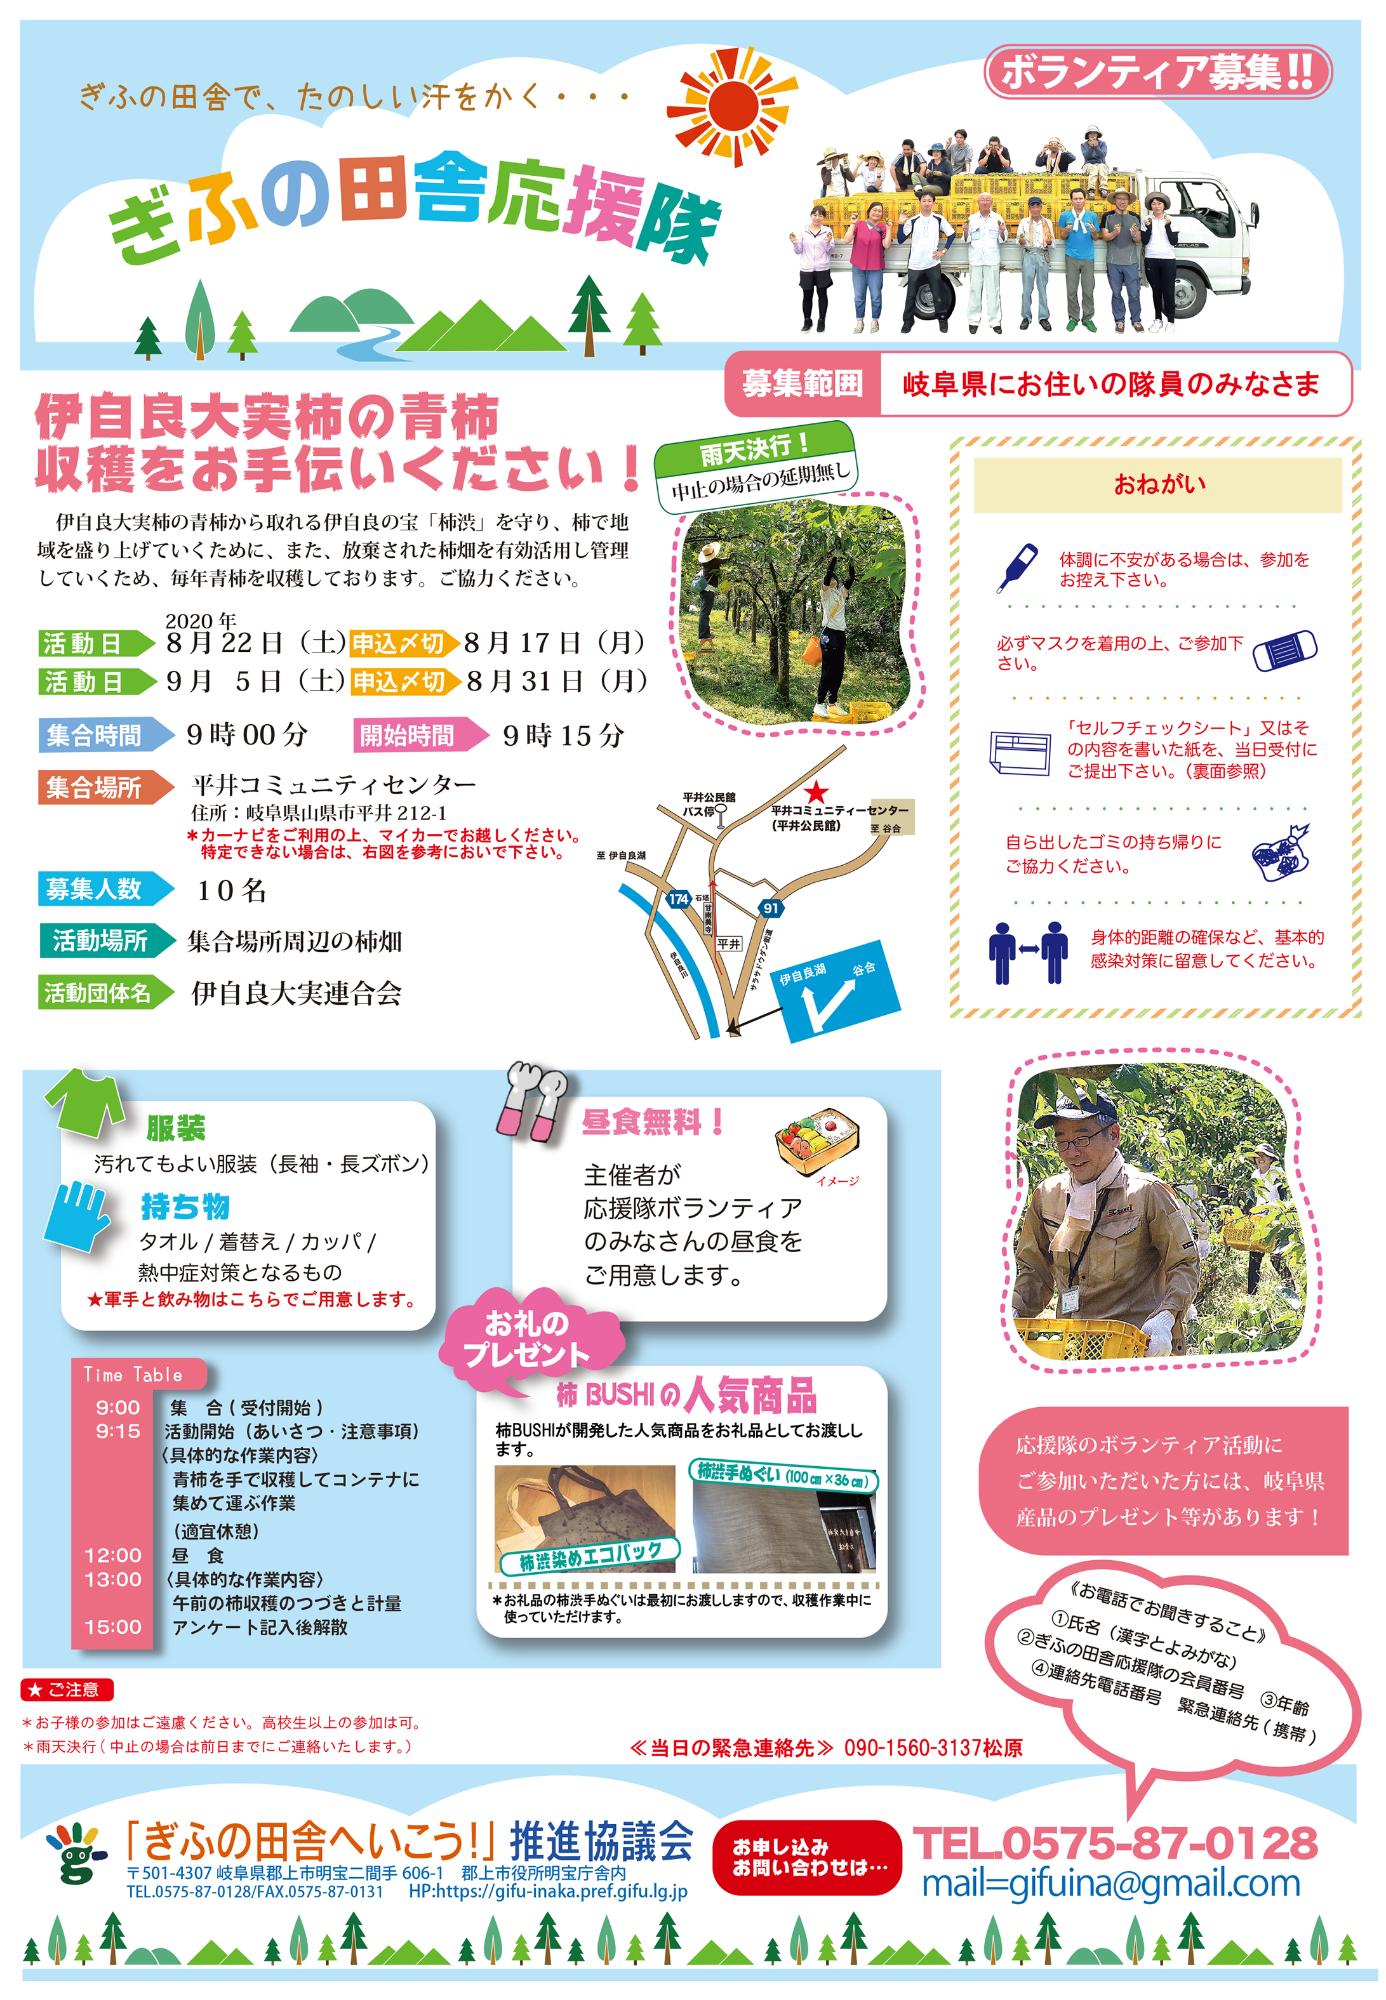 終了しました 8月22日と9月5日 伊自良大実柿の青柿収穫をお手伝いください 岐阜県グリーン ツーリズムサイト